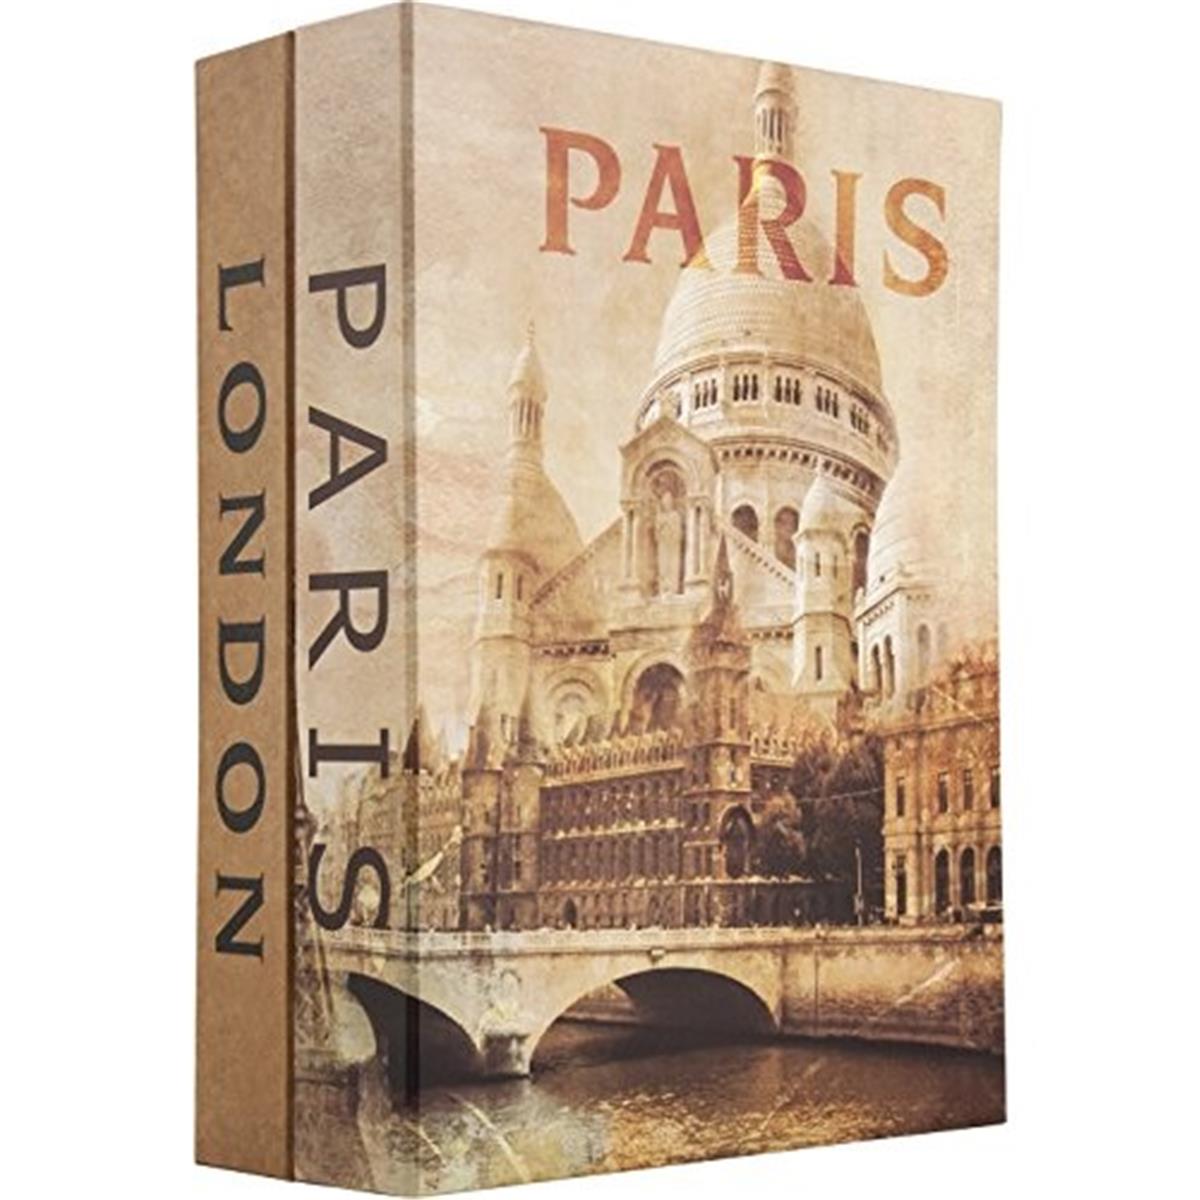 Cb12470 Paris & London Dual Book Lock Box With Key Lock